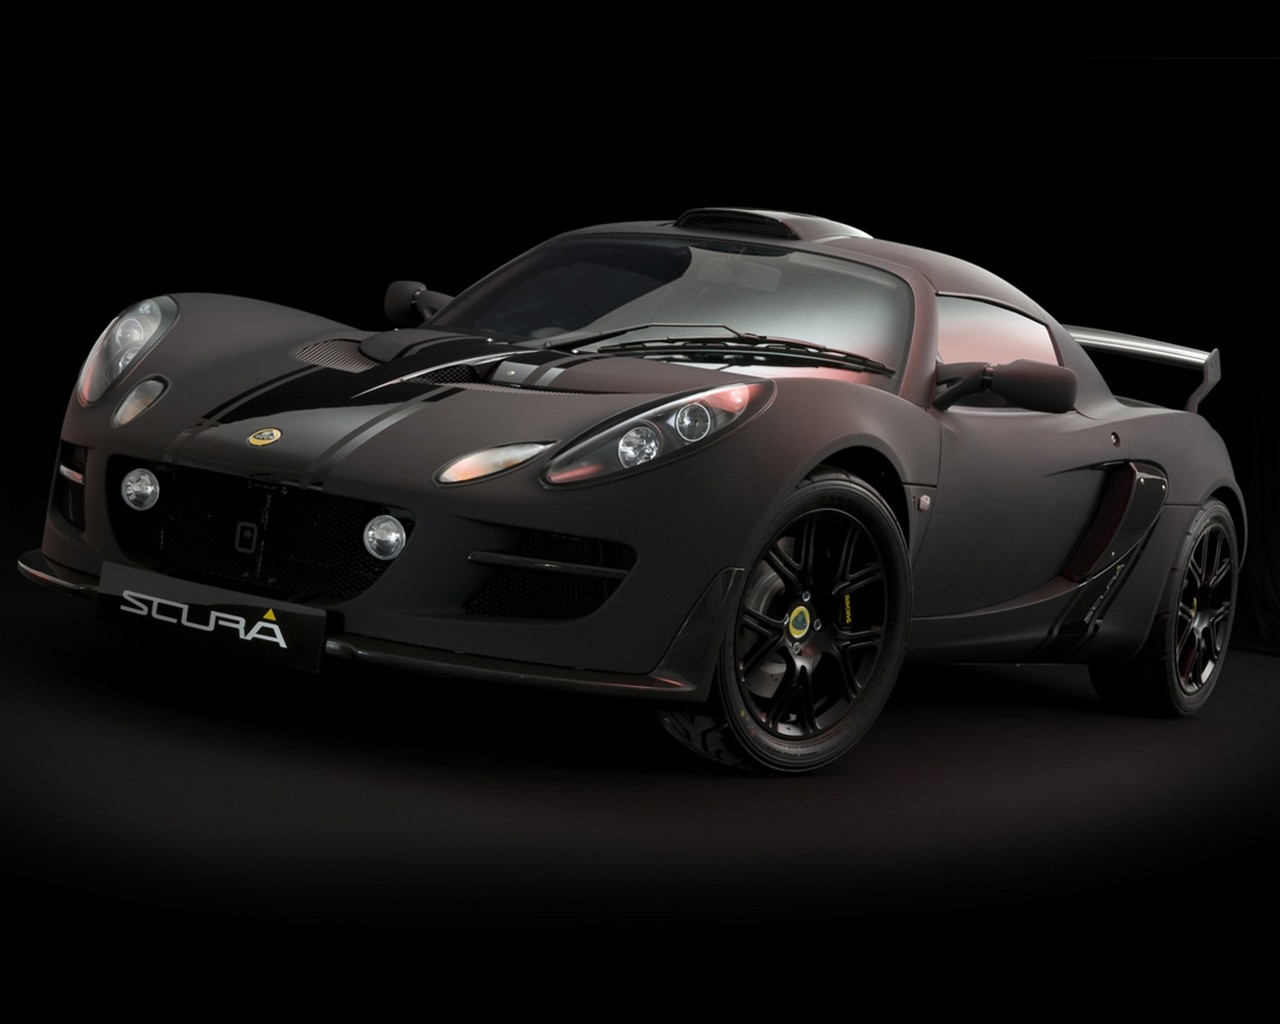 2010 Lotus-Sportwagen in limitierter Auflage Tapete #3 - 1280x1024